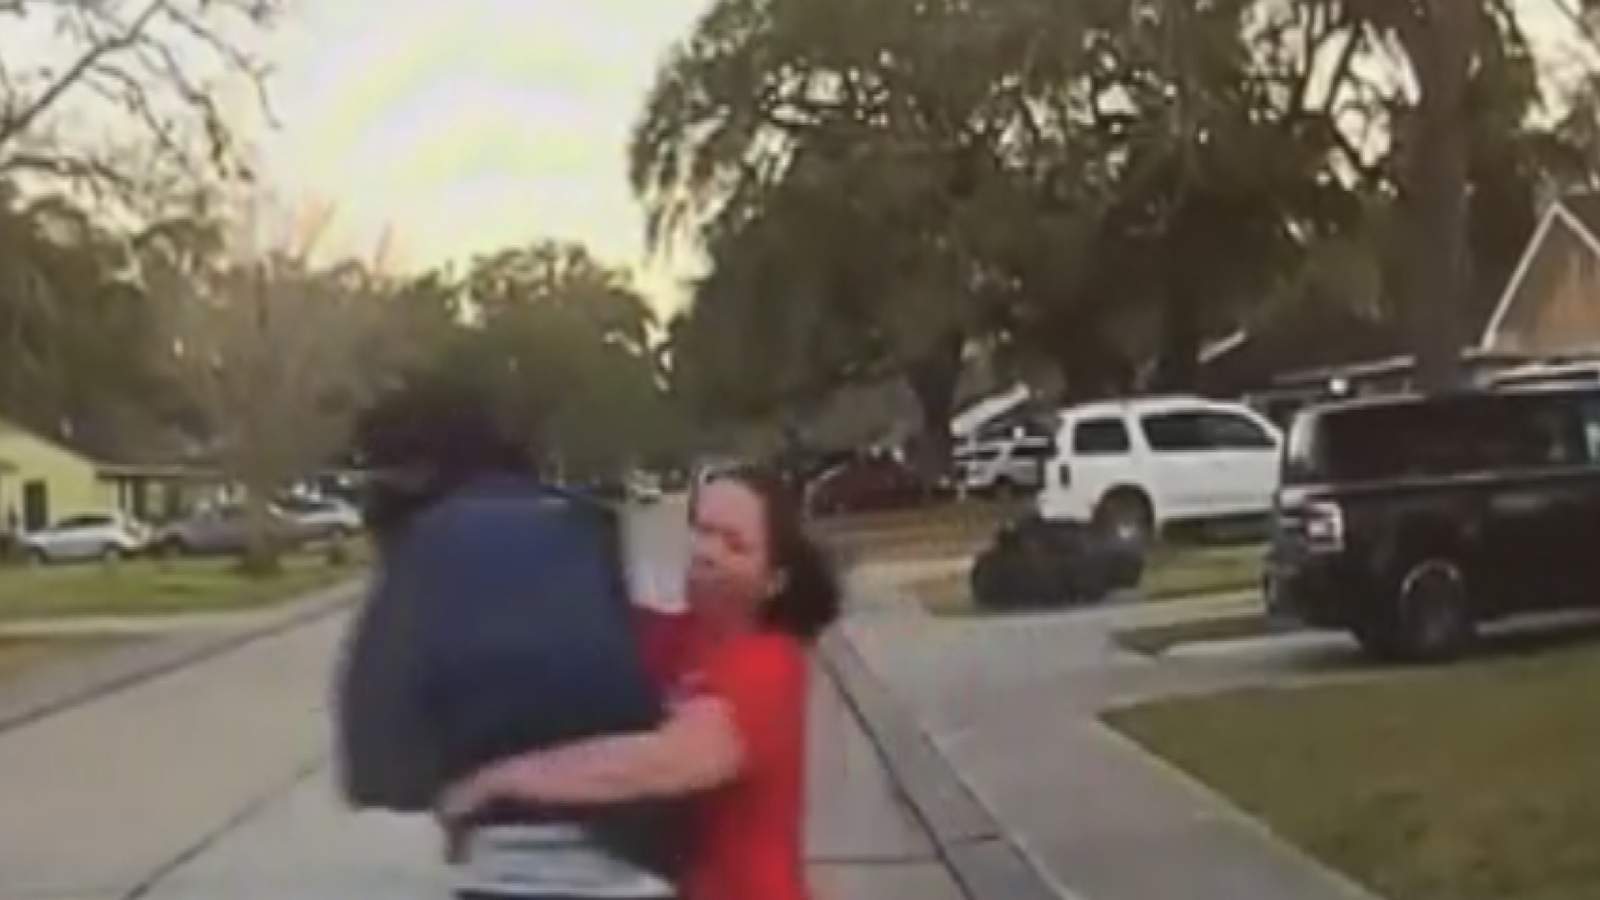 VIDEO: Texas mom tackles man accused of peeking in daughter’s bedroom